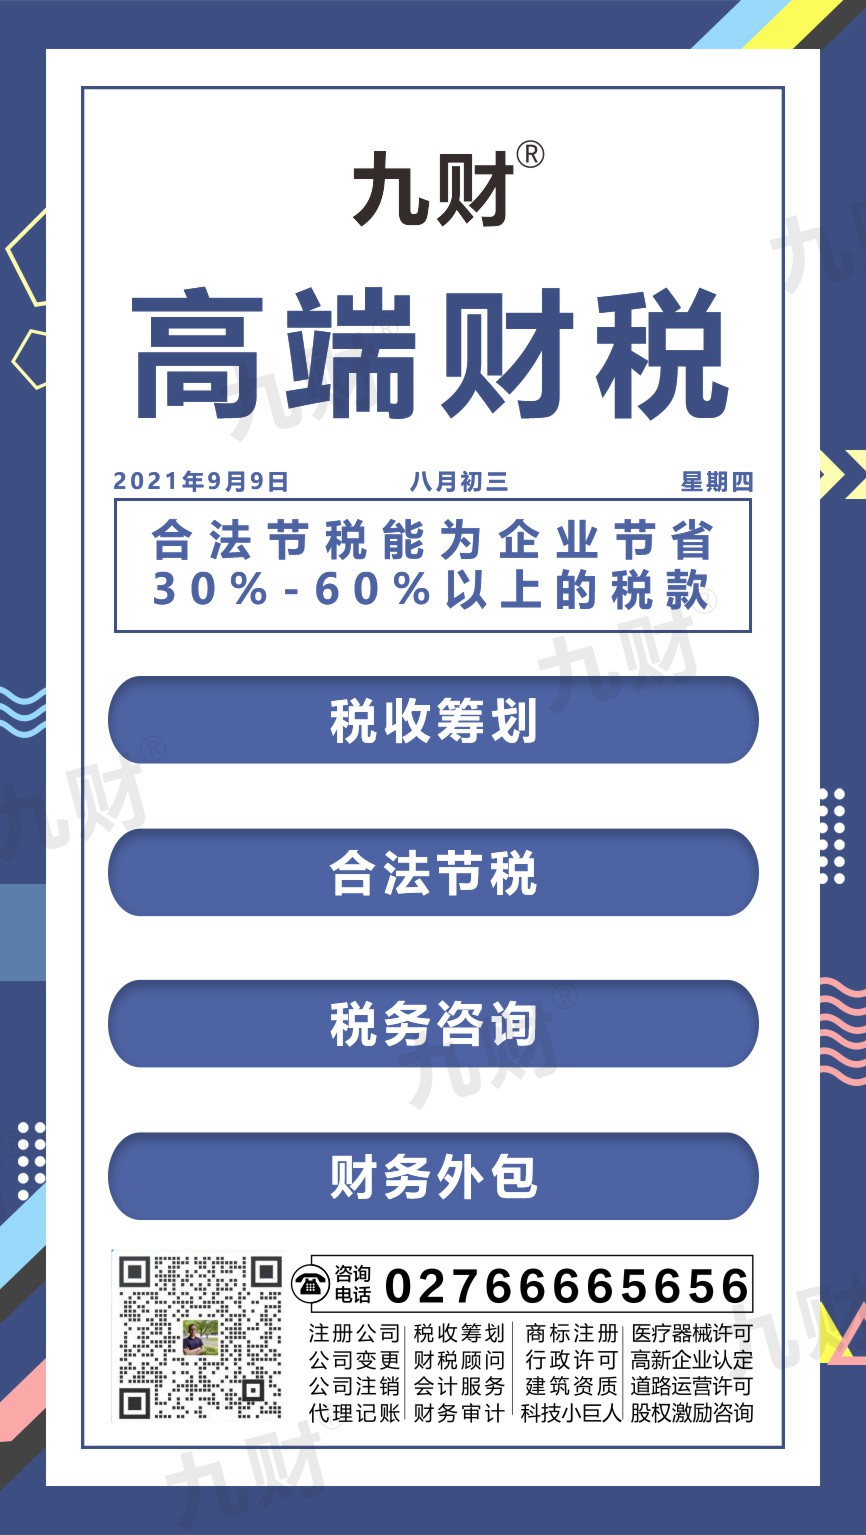 江夏区武汉东湖区股东变更网上如何填写资料申请